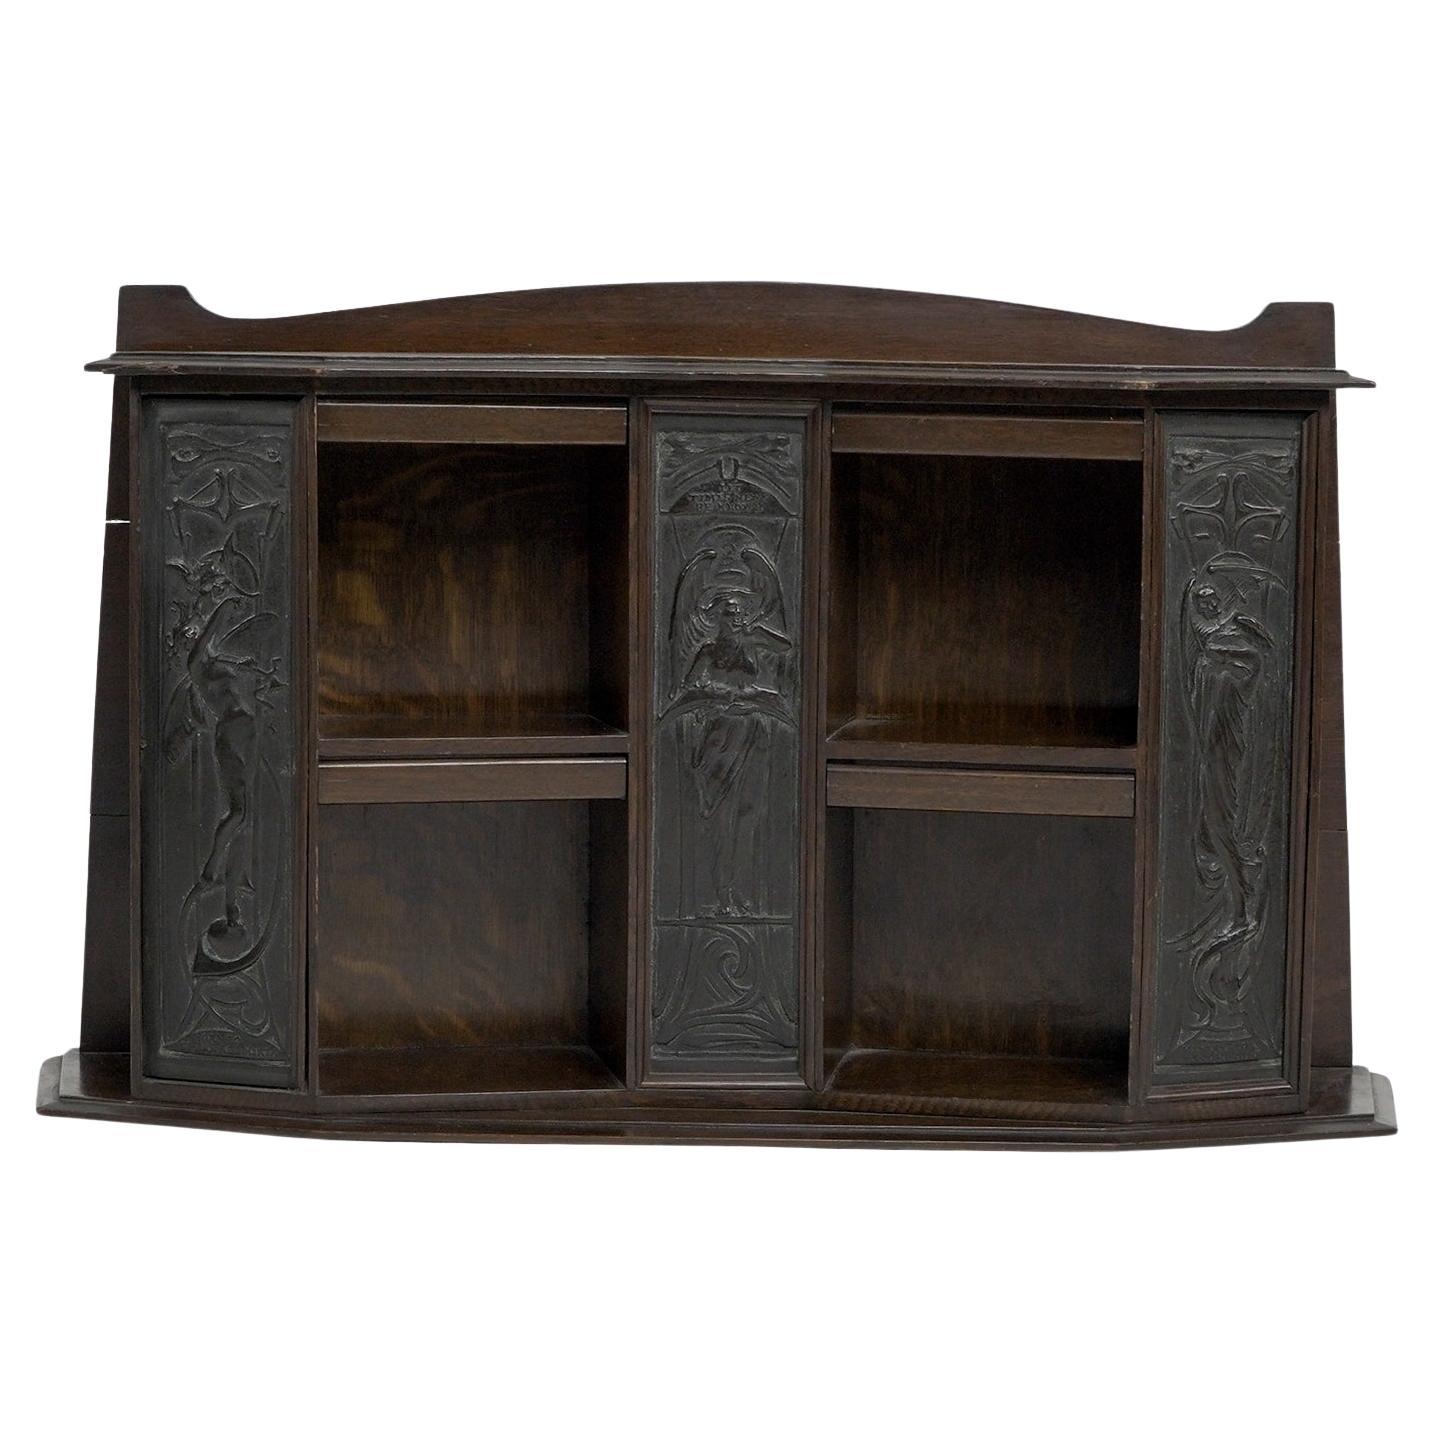 Arts and Crafts oak desk top bookcase with 3 bronze Art Nouveau period plaques.